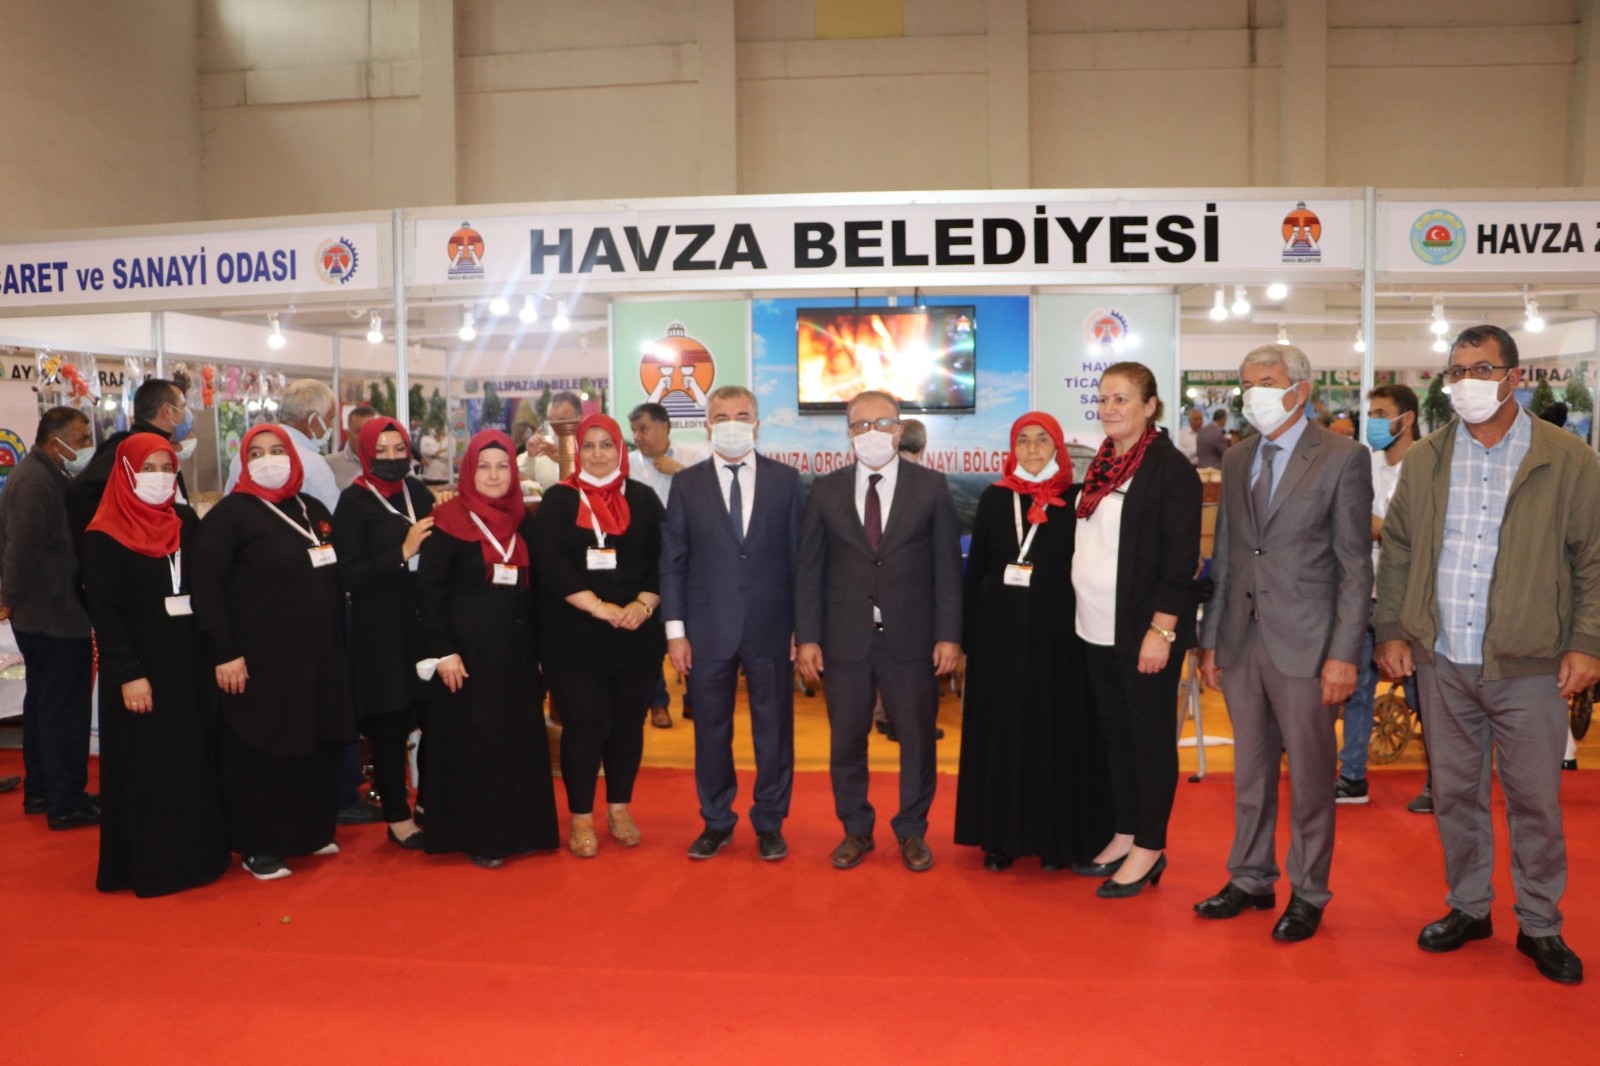 Başkan Özdemir: “Ekonomiye katkı sunmak isteyen kadınlarımızın yanındayız”